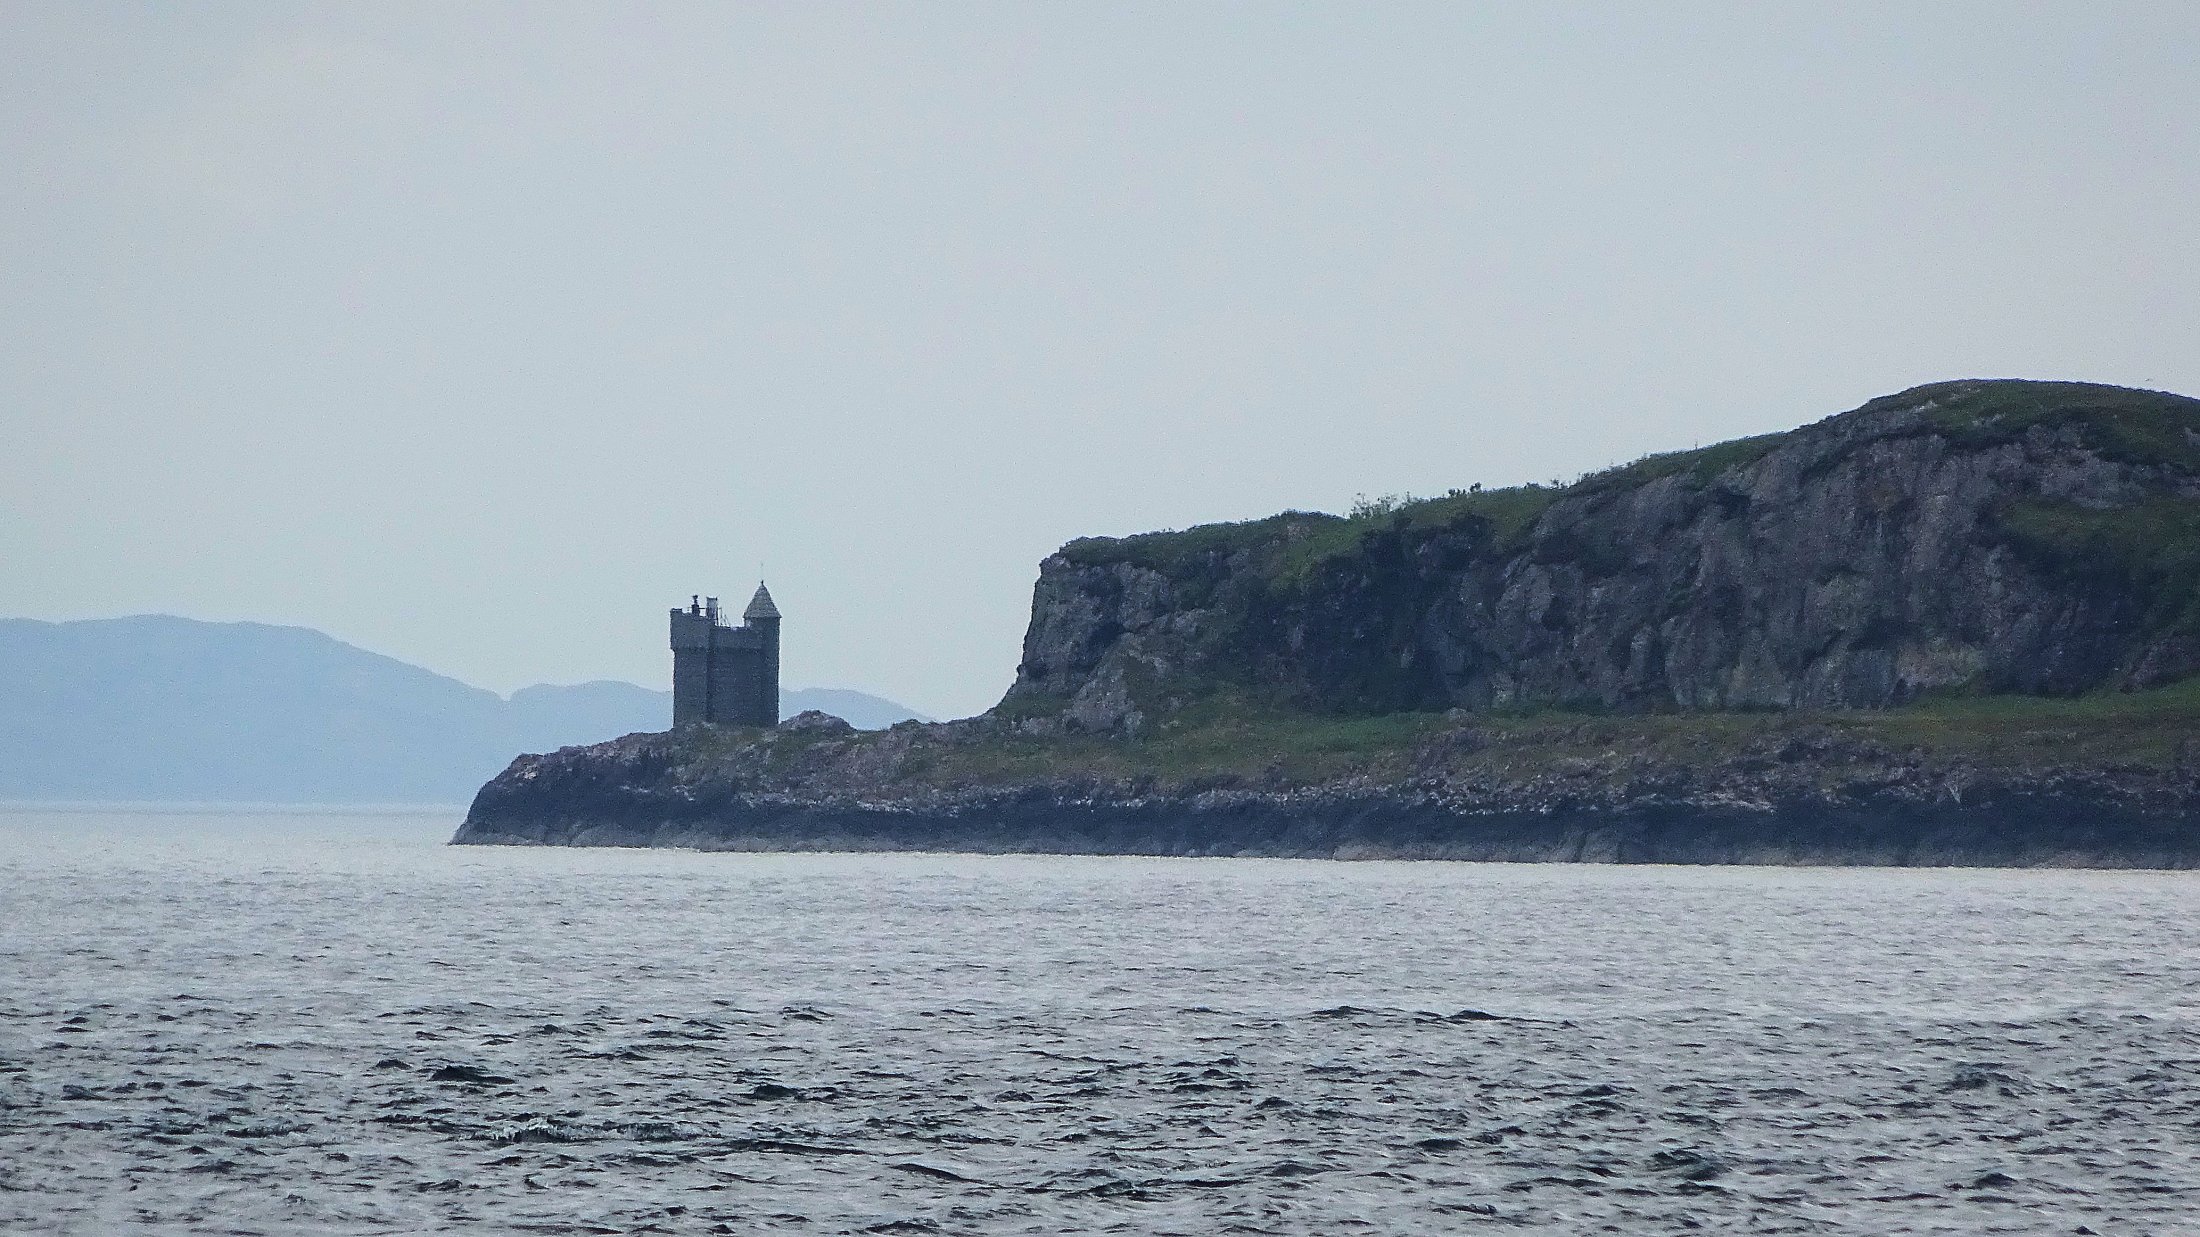 Duart Castle Lookout Tower